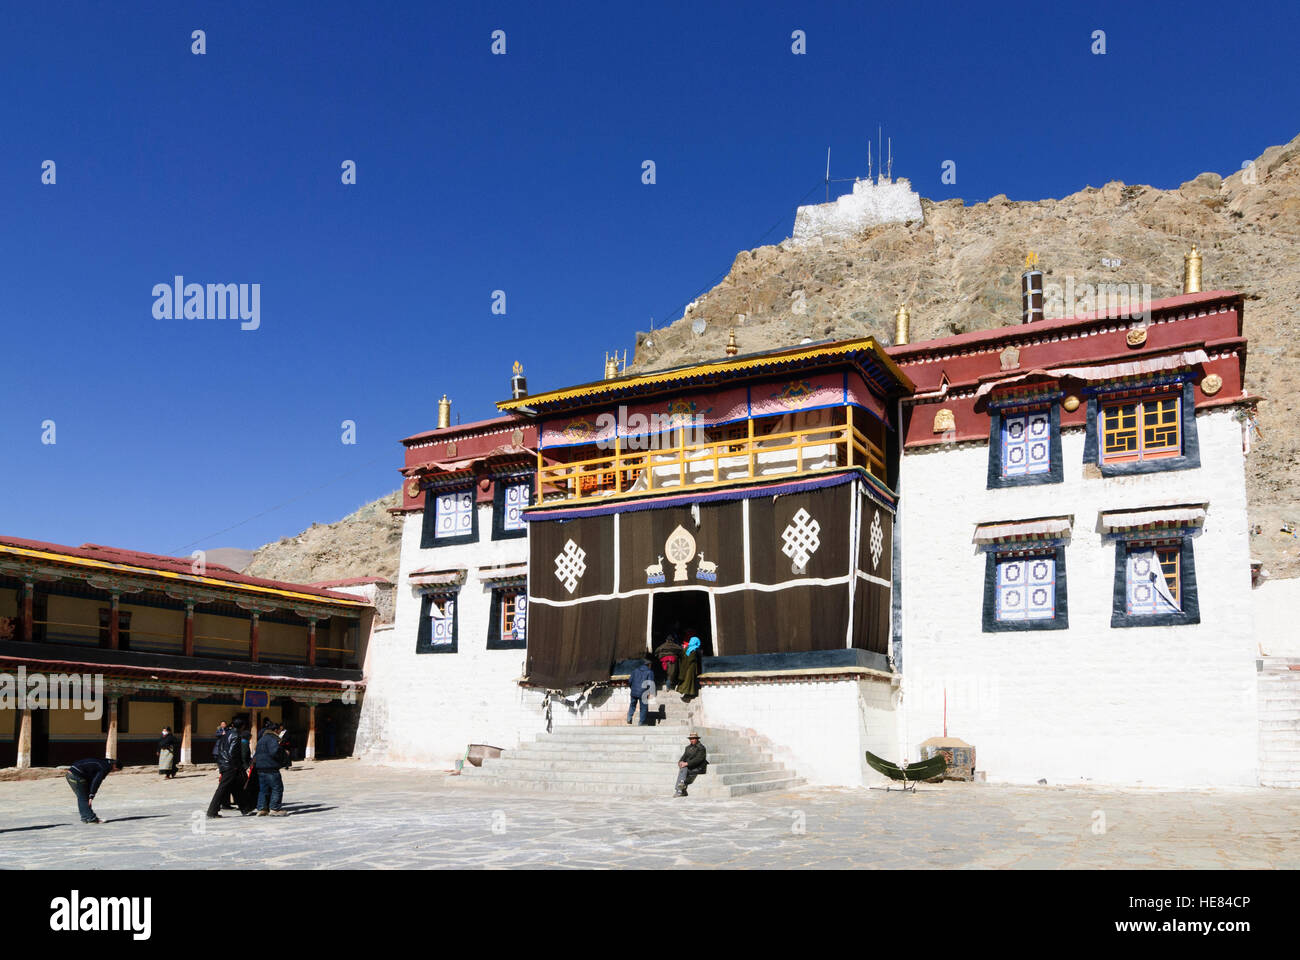 Dagtse: Sanga Monastery below the Dagtse Dzong (castle), Tibet, China Stock Photo